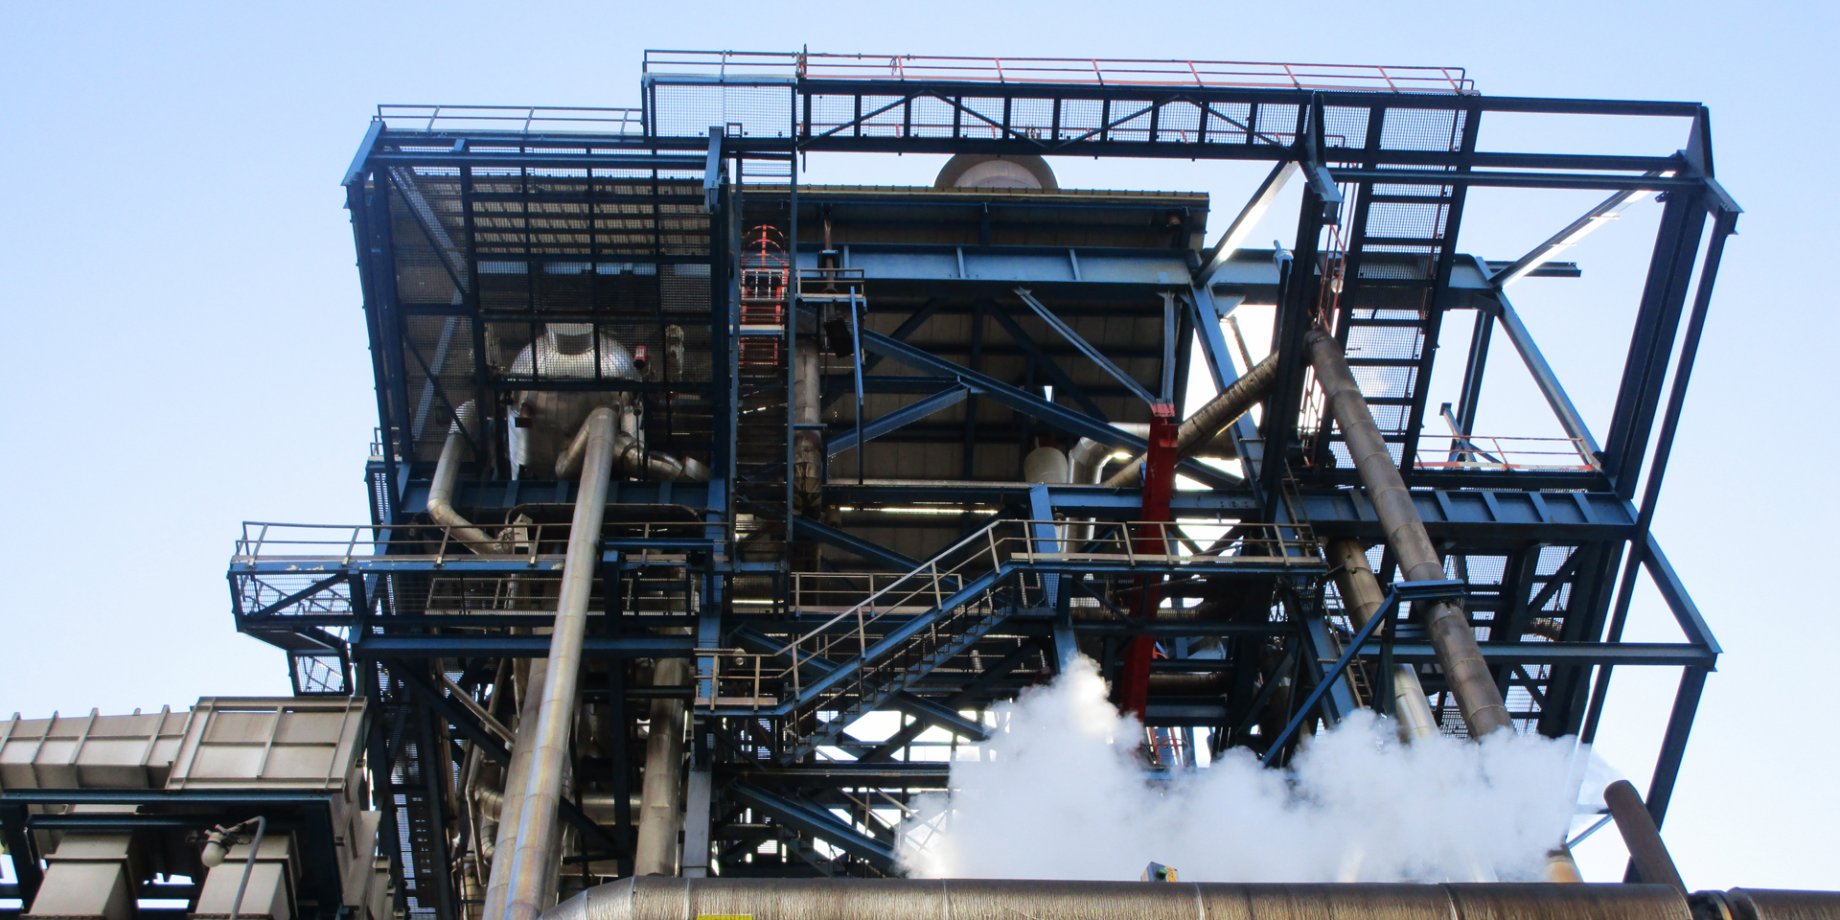 Steelworks_Industrial revamping_Yara